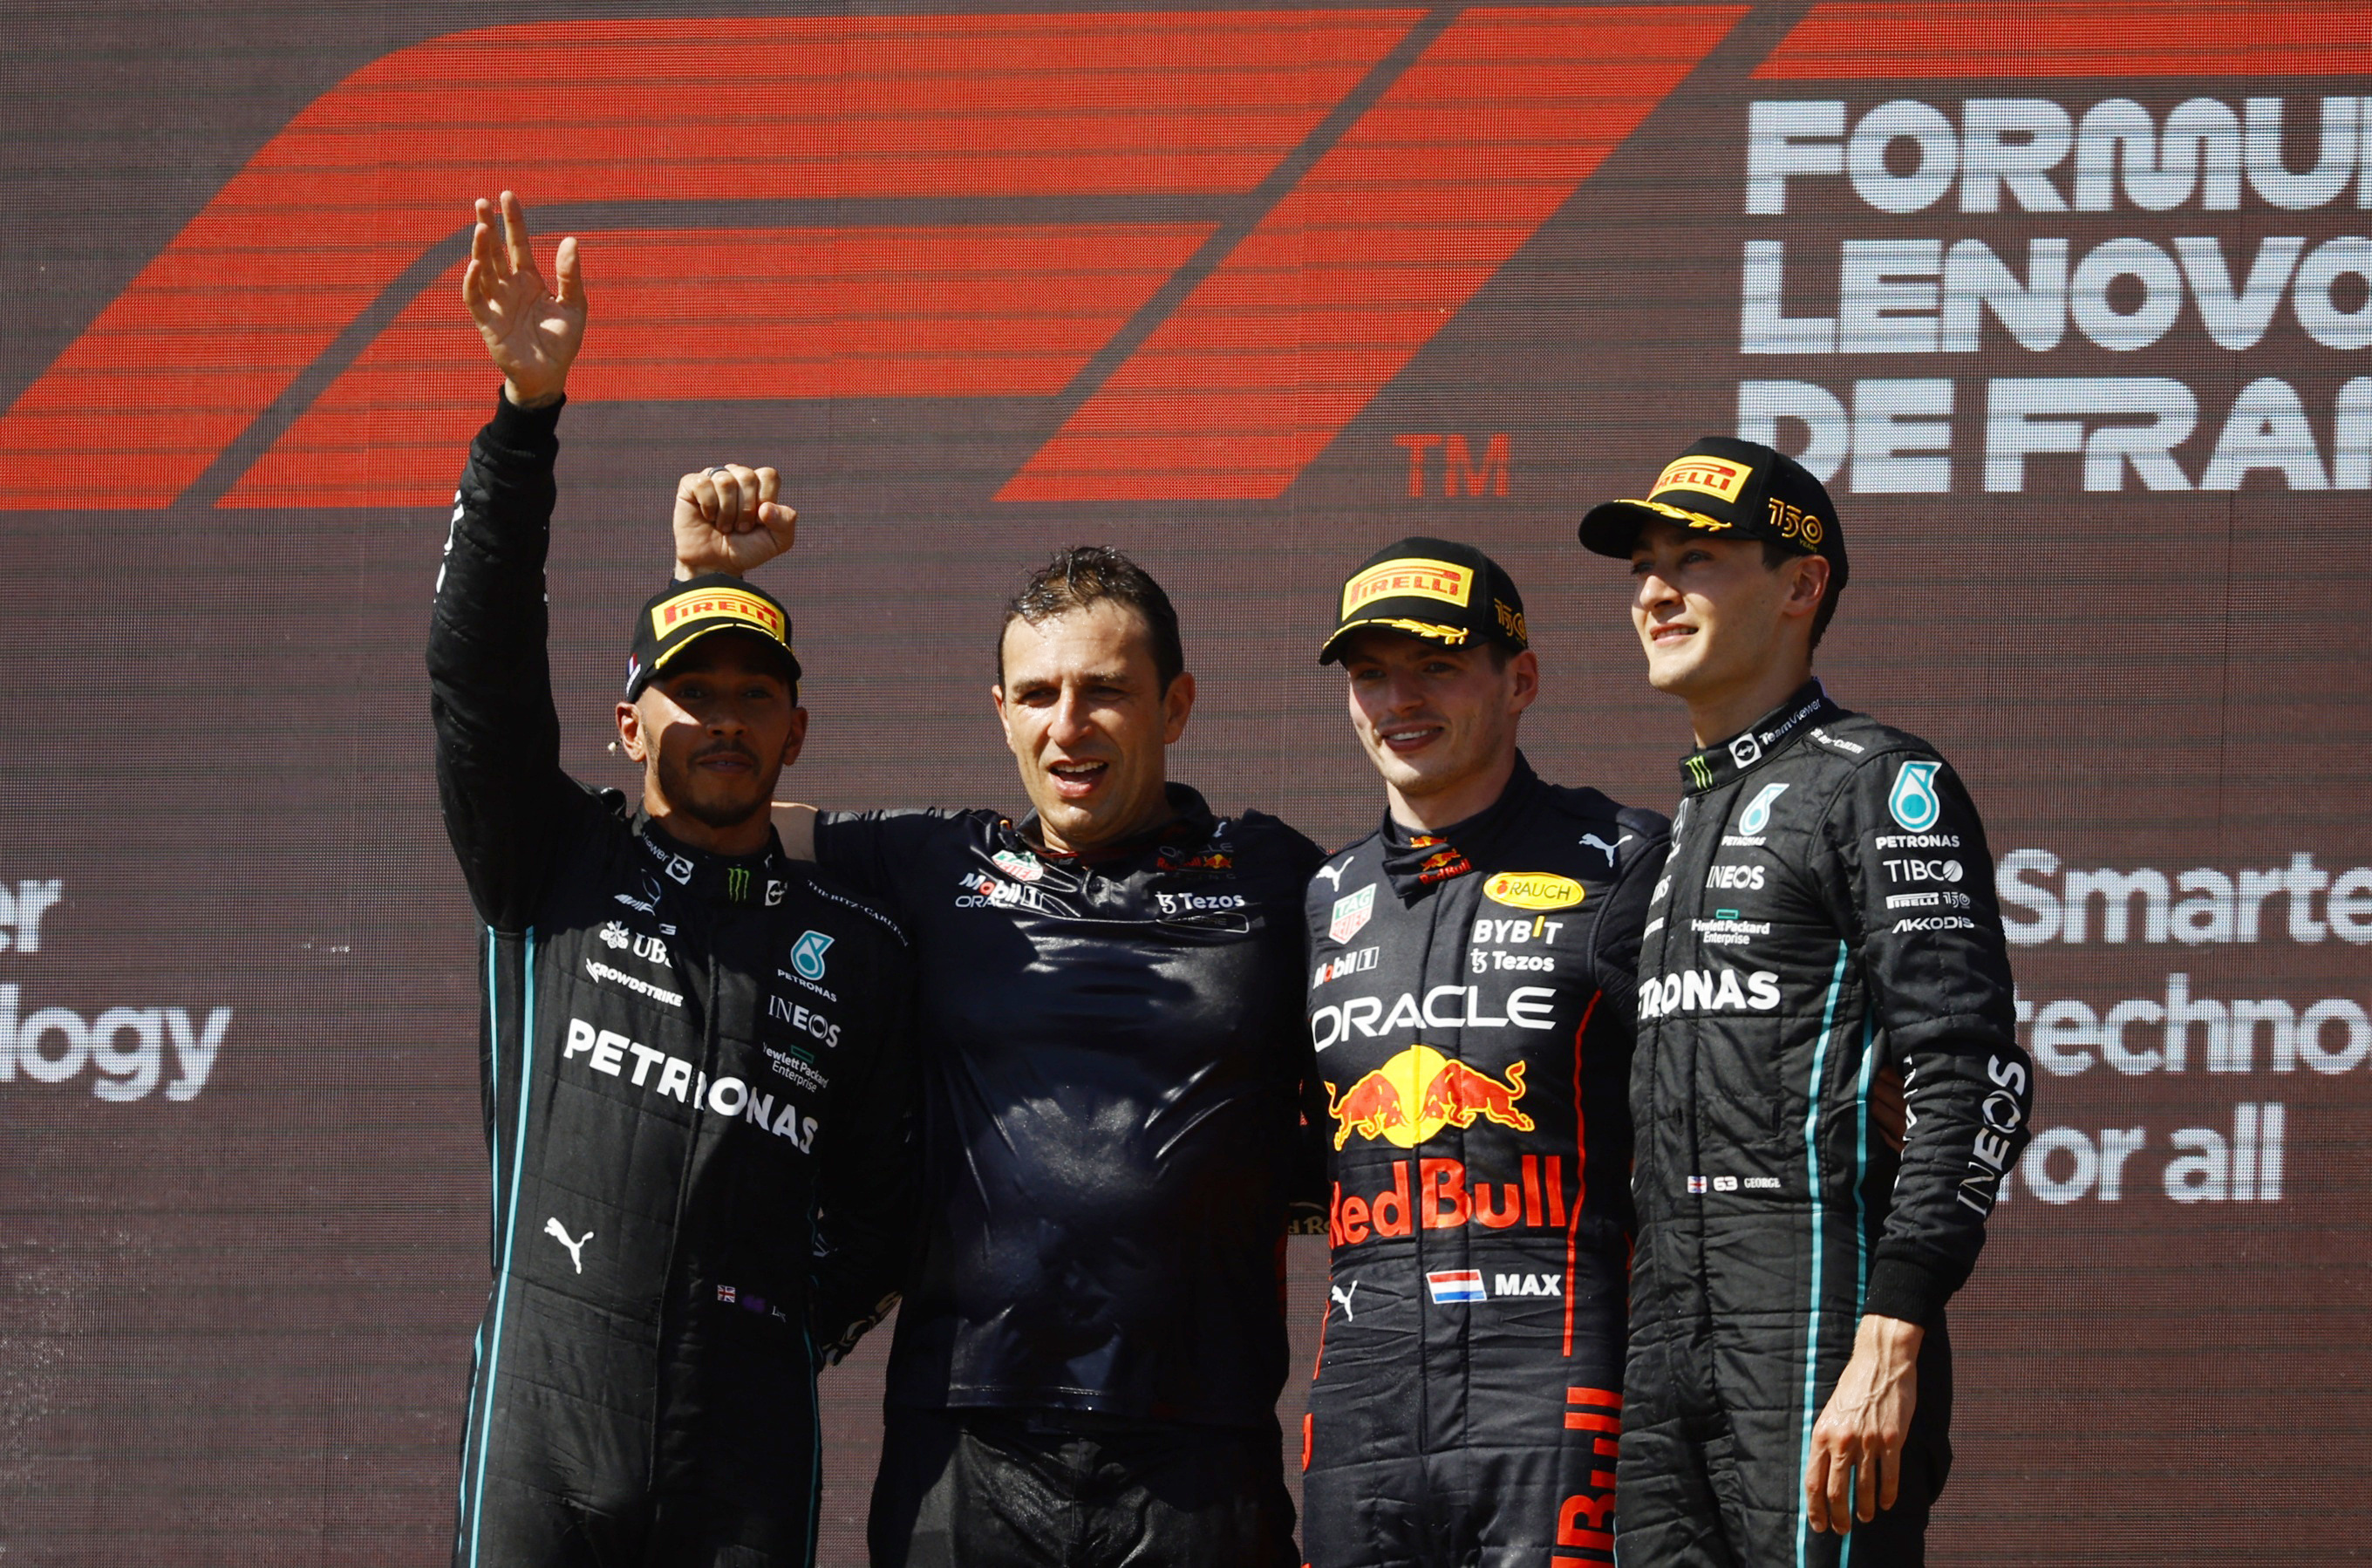 El podio en Francia estuvo conformado por Max Verstappen, Lewis Hamilton y George Russell (Foto: REUTERS/Sarah Meyssonnier)